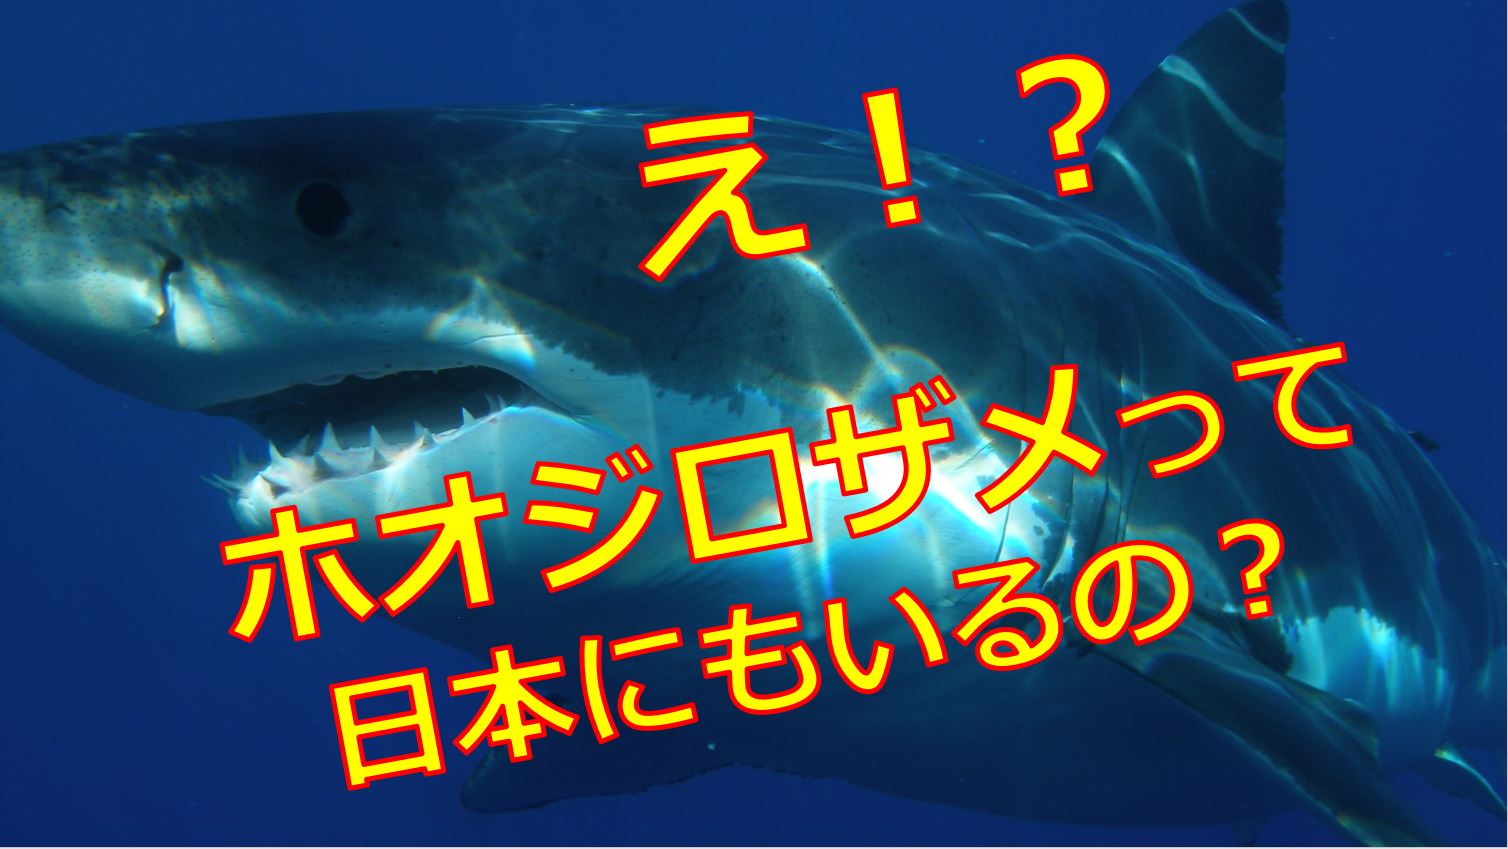 最大 の 事故 ホオジロザメ 奄美大島沖漁船転覆事故生還した漁師が語った「人喰いザメとの死闘」（フライデー）